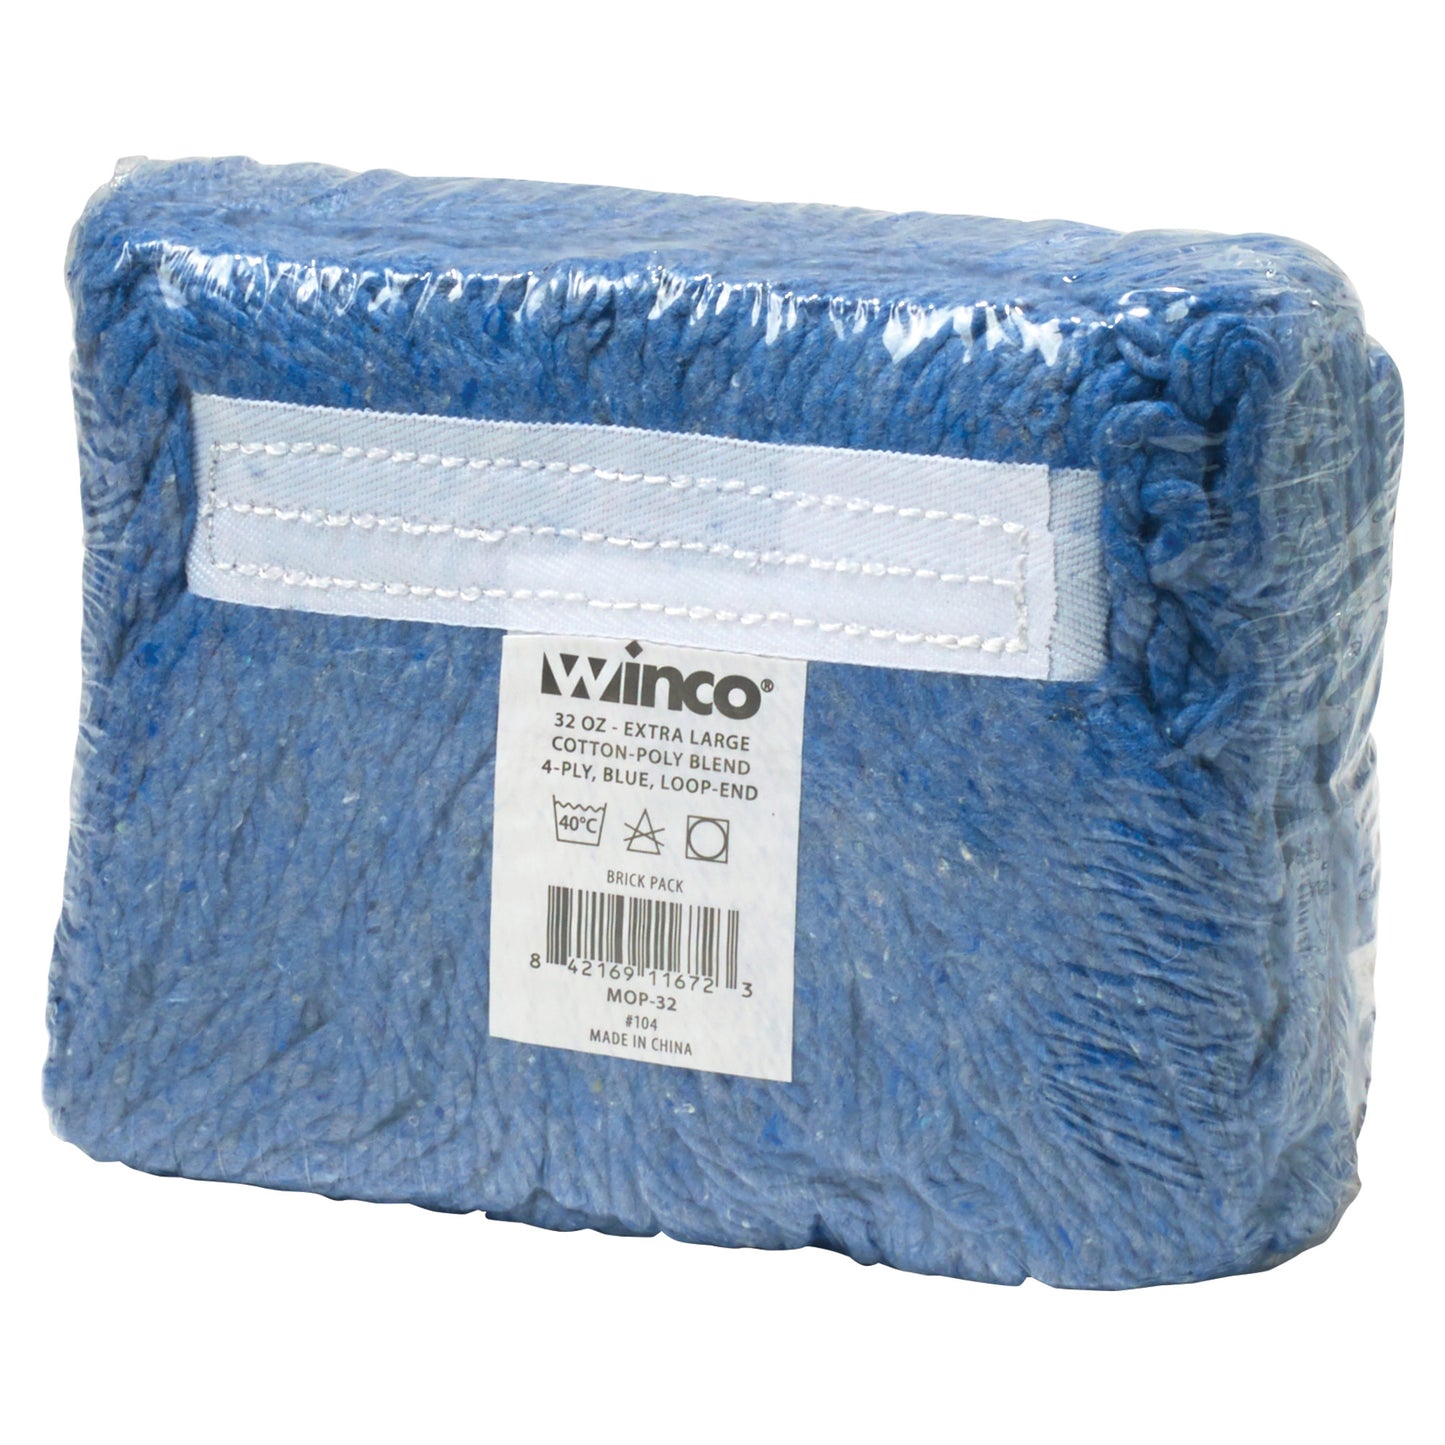 MOP-32 - Premium Cotton-Poly Blend Looped End Wet Mop Head - Blue - 32oz/900g